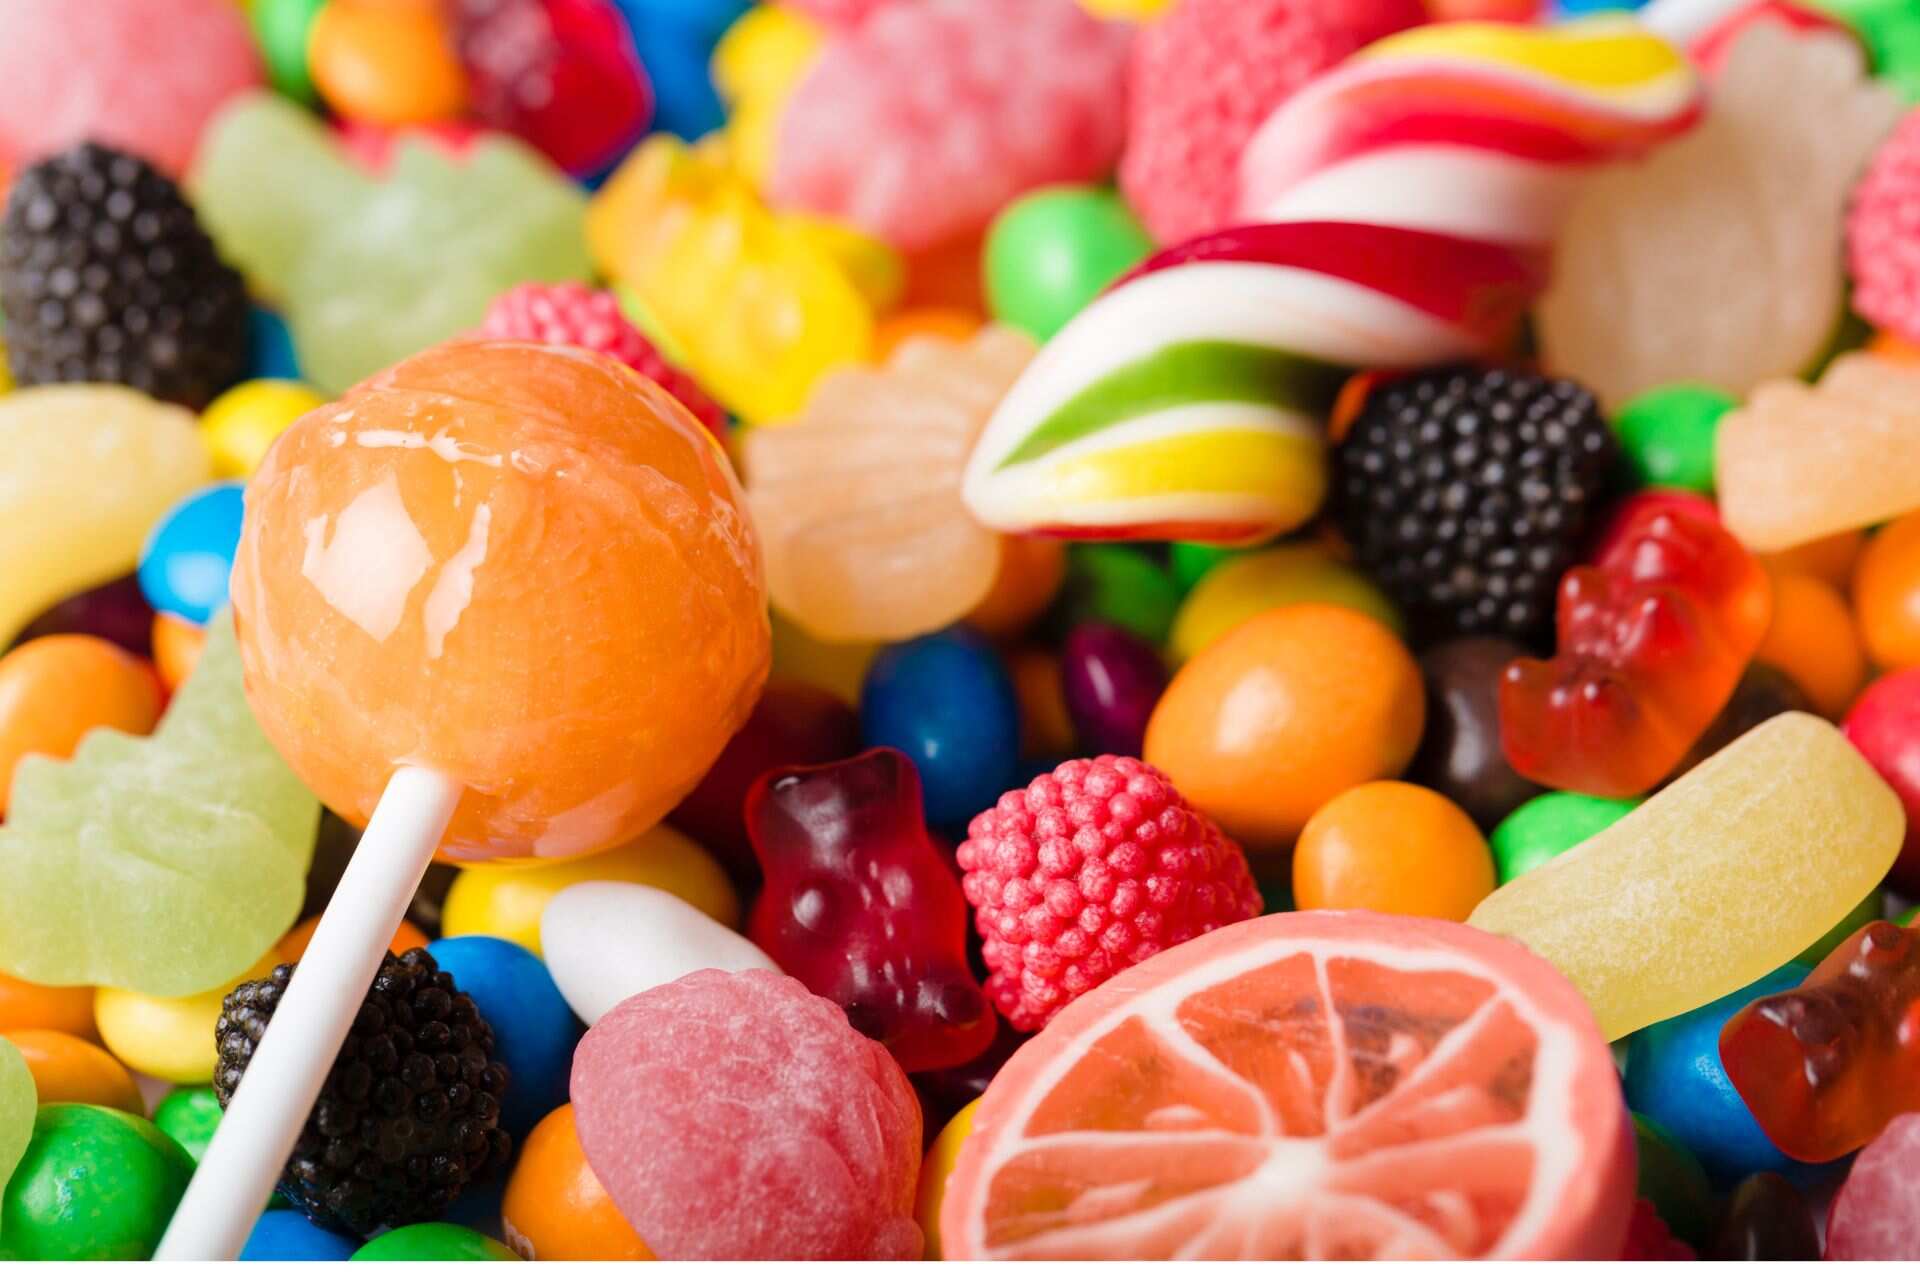 Ritenzione idrica: limitare il consumo di zuccheri può aiutare a scongiurarne il rischio